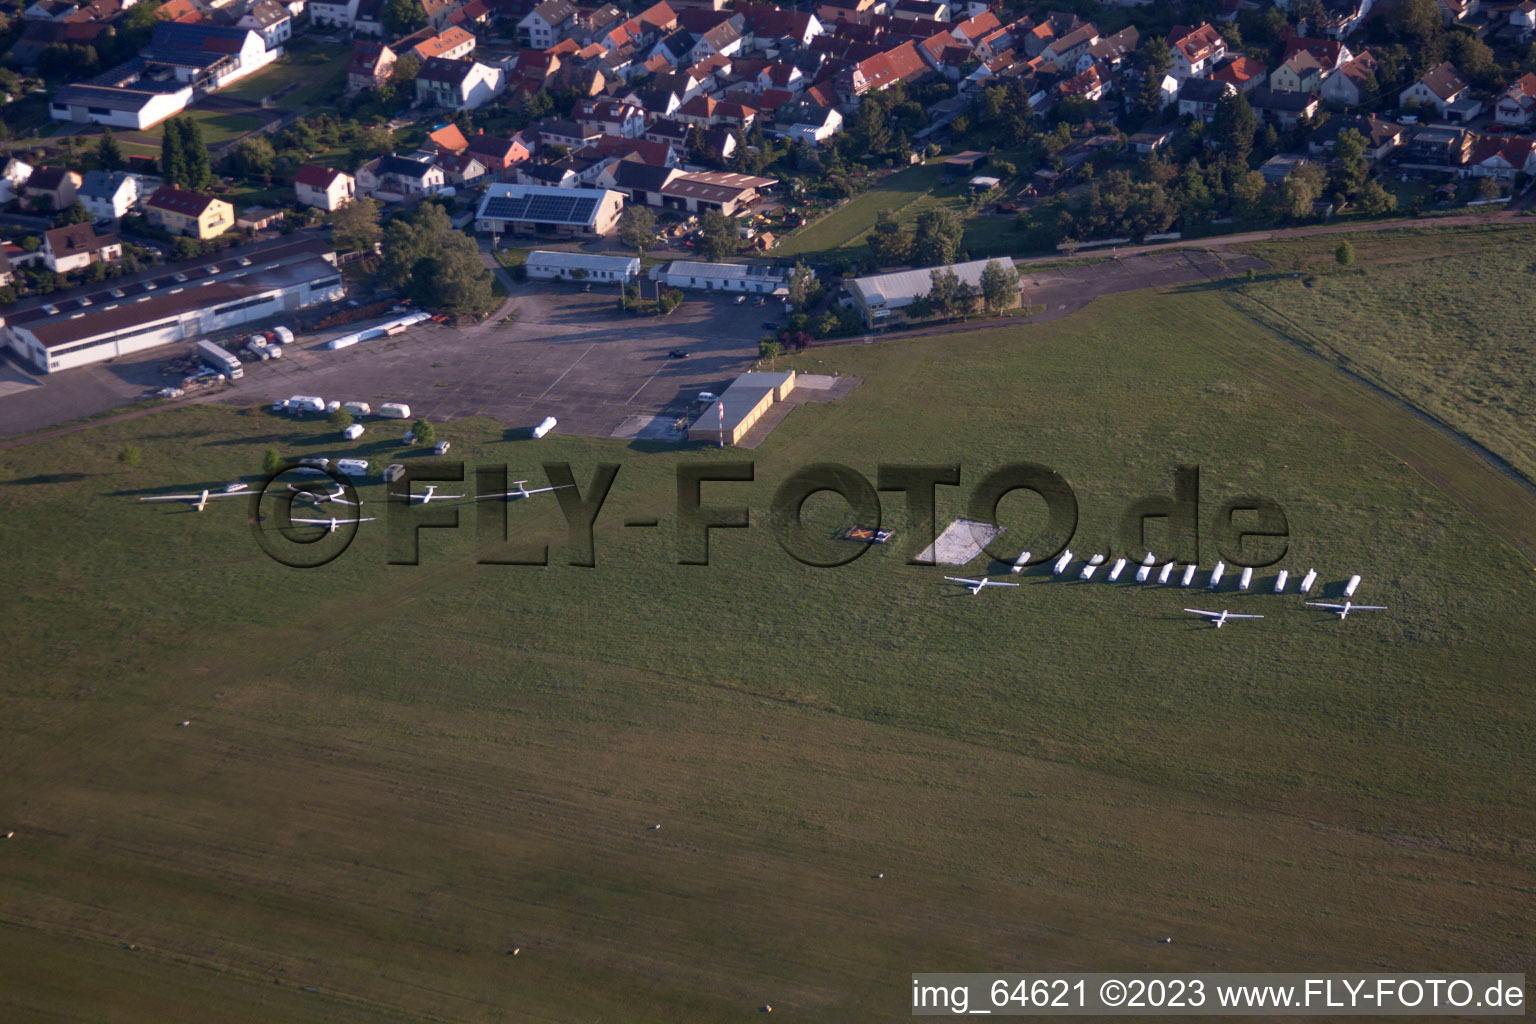 Luftbild von Segelflugplatz im Ortsteil Speyerdorf in Neustadt an der Weinstraße im Bundesland Rheinland-Pfalz, Deutschland